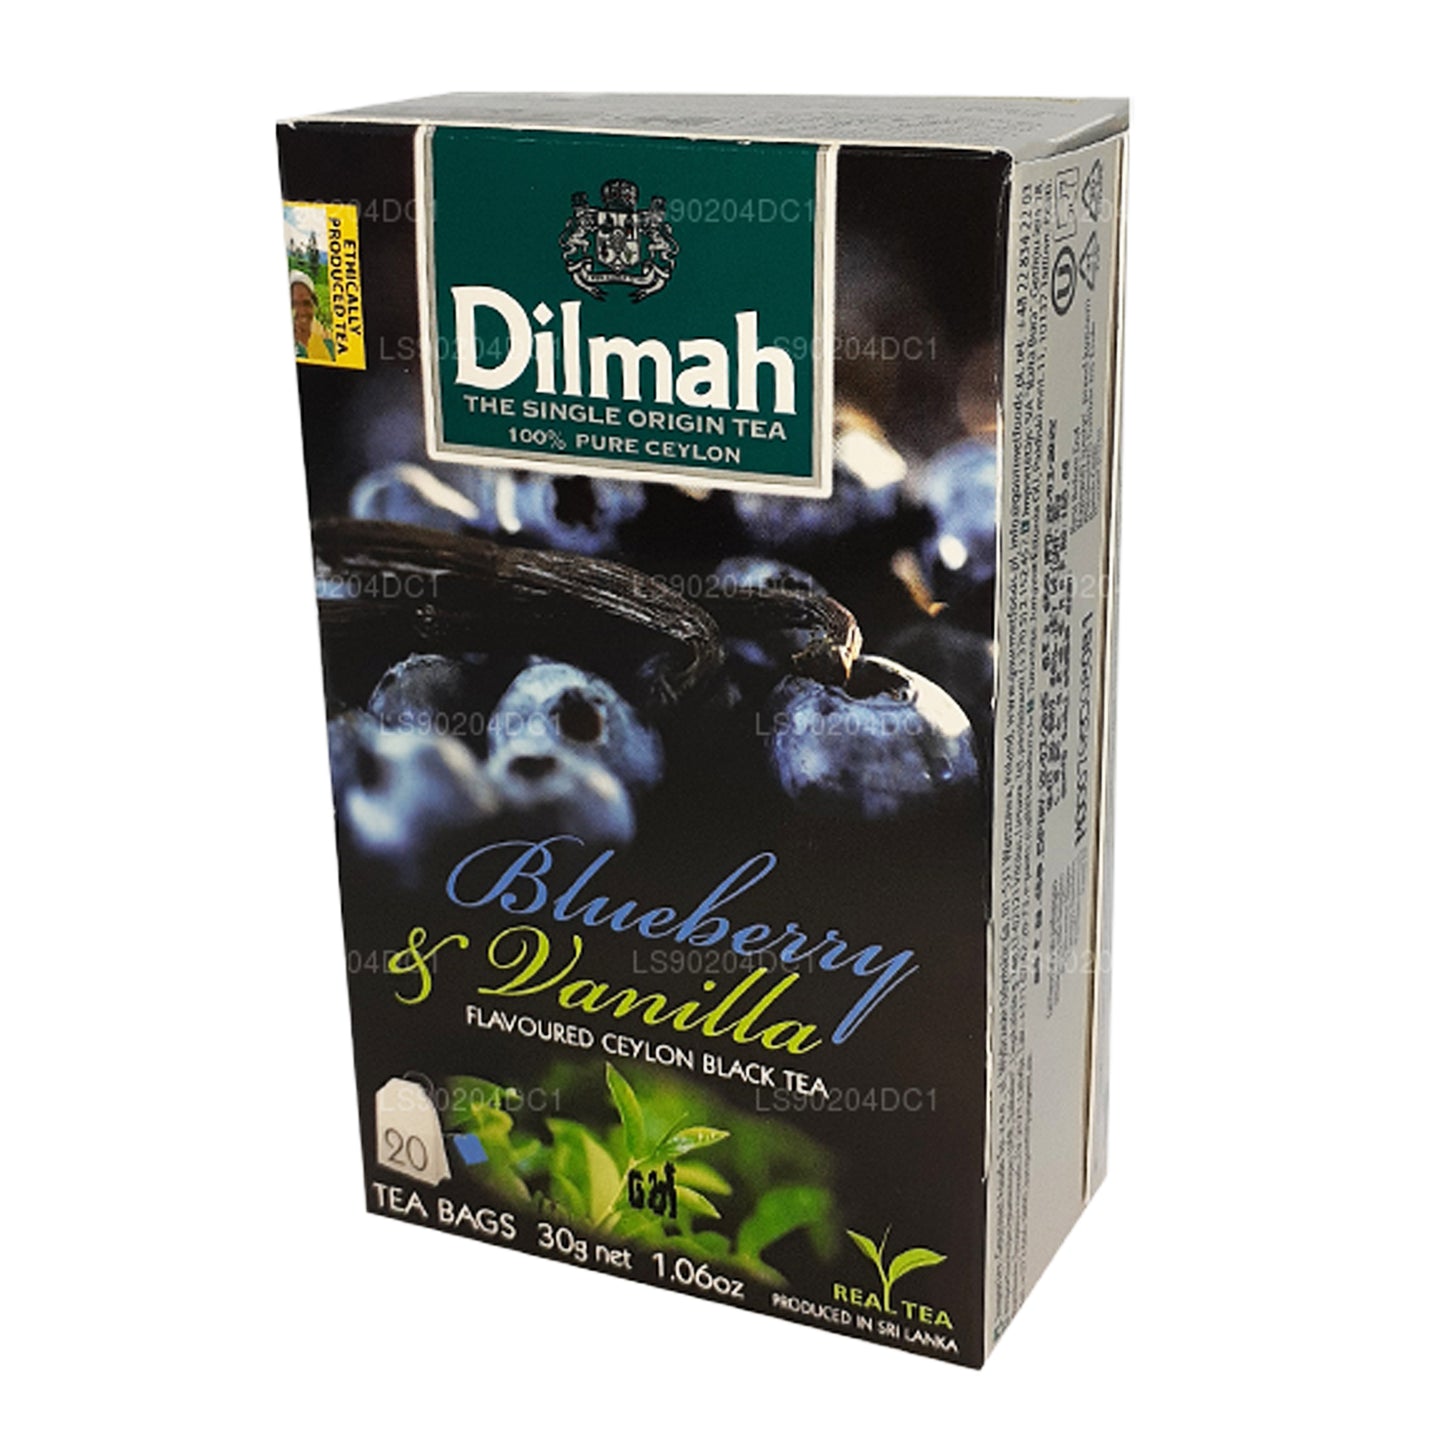 Té Dilmah con sabor a arándanos y vainilla (40 g) 20 bolsitas de té